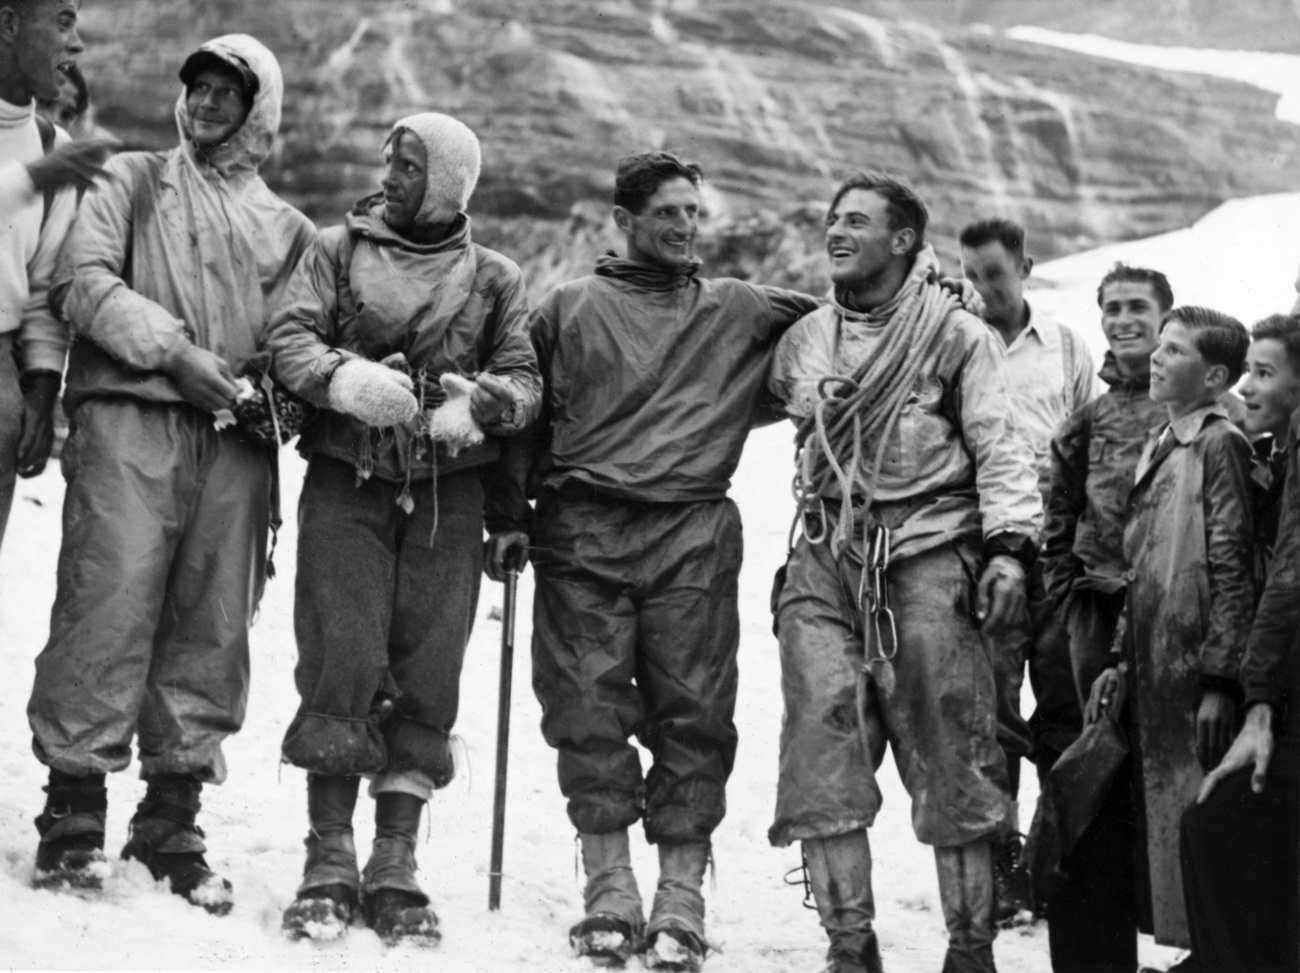 льпинисты Генрих Харрер, Людвиг «Виггерль» Фоерг, Андреас Хекмайр и Фриц Каспарек, слева направо, позируют после первого успешного восхождения на северную вершину горы Эйгер близ Гриндельвальда в Бернском Оберланде, Швейцария, фото 24 июля 1938 года.